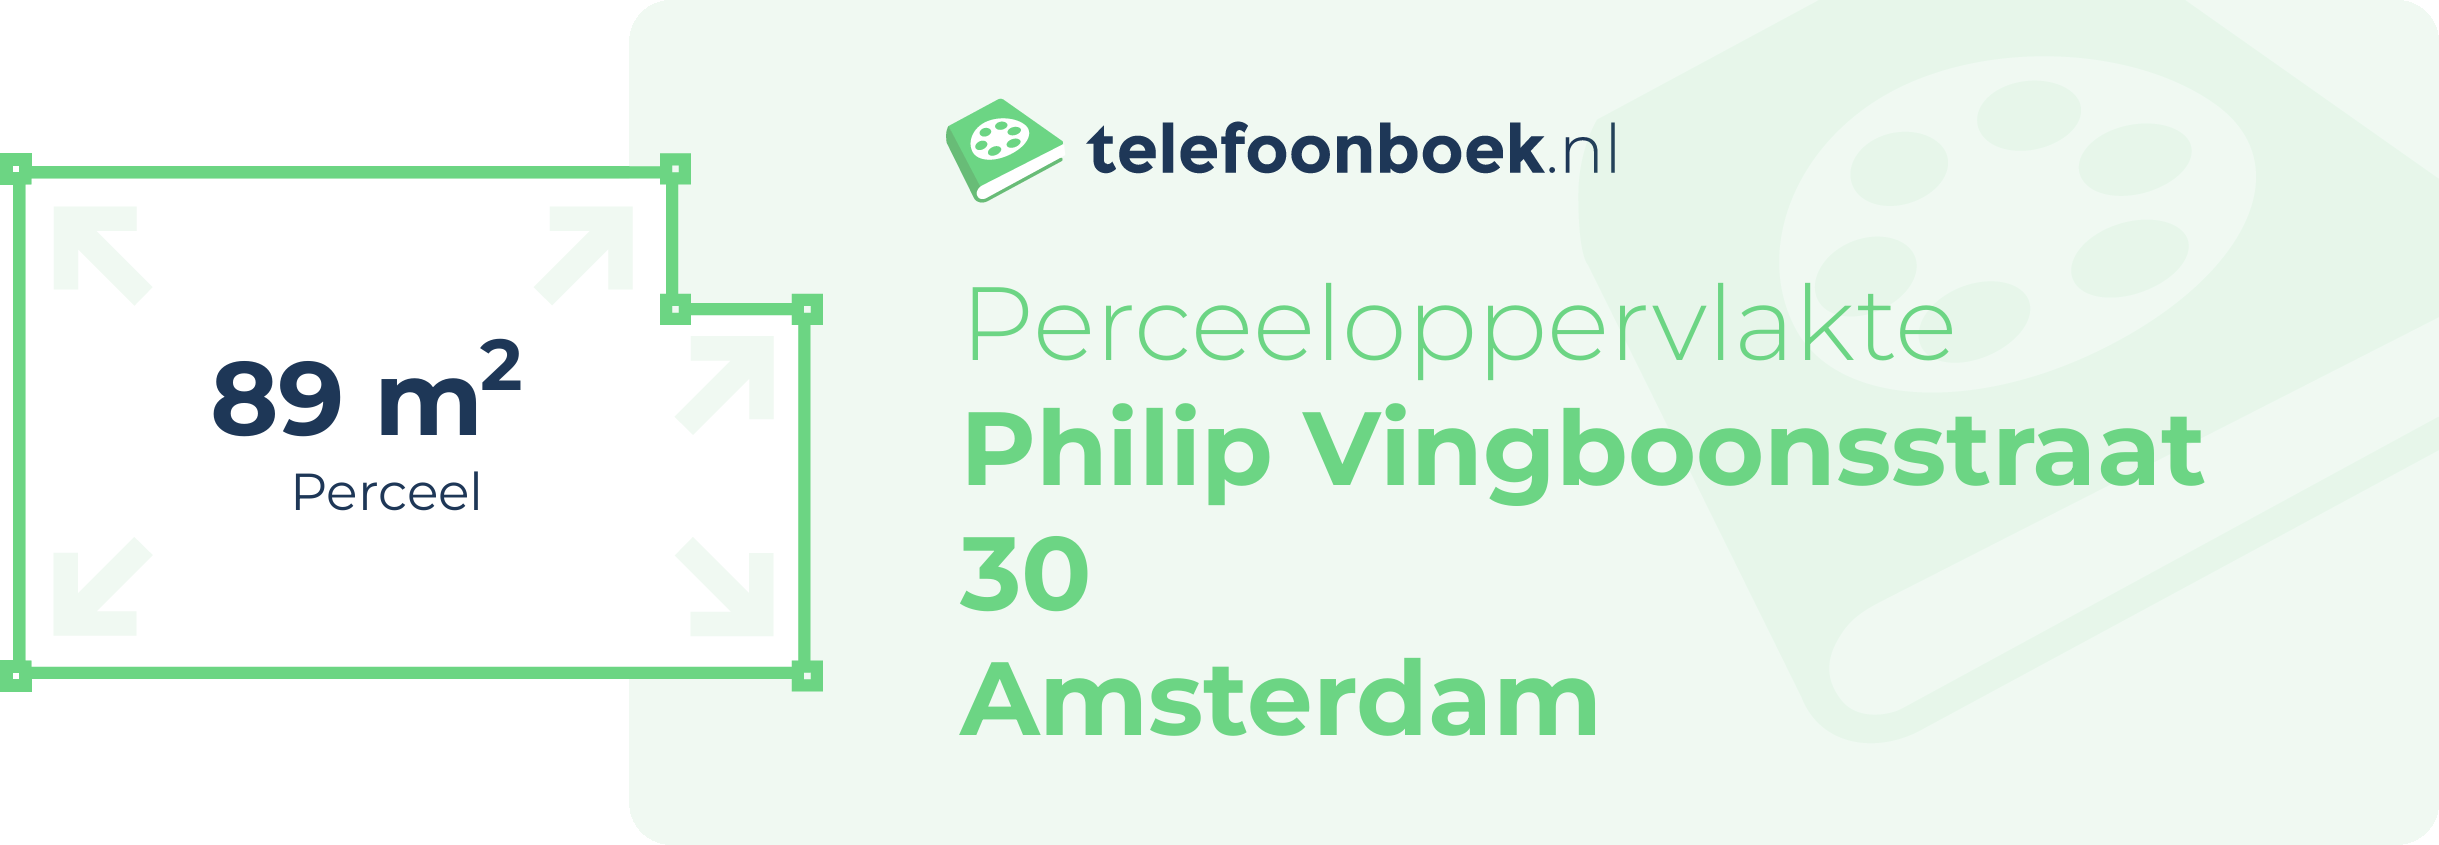 Perceeloppervlakte Philip Vingboonsstraat 30 Amsterdam